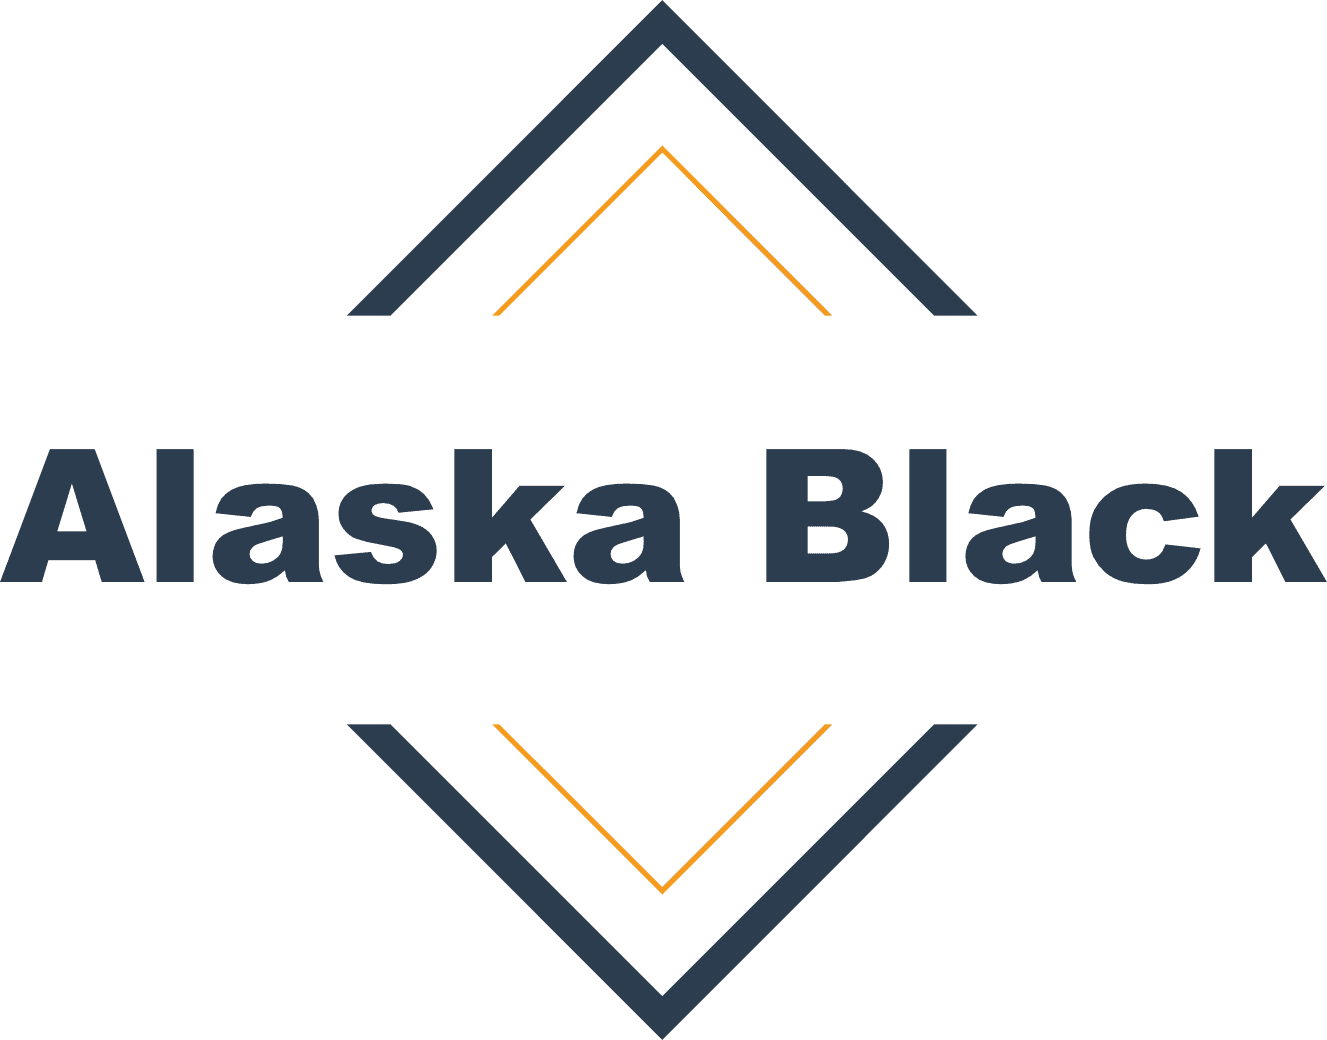 Alaska Black: conheça um dos fundos de investimento mais famosos do país